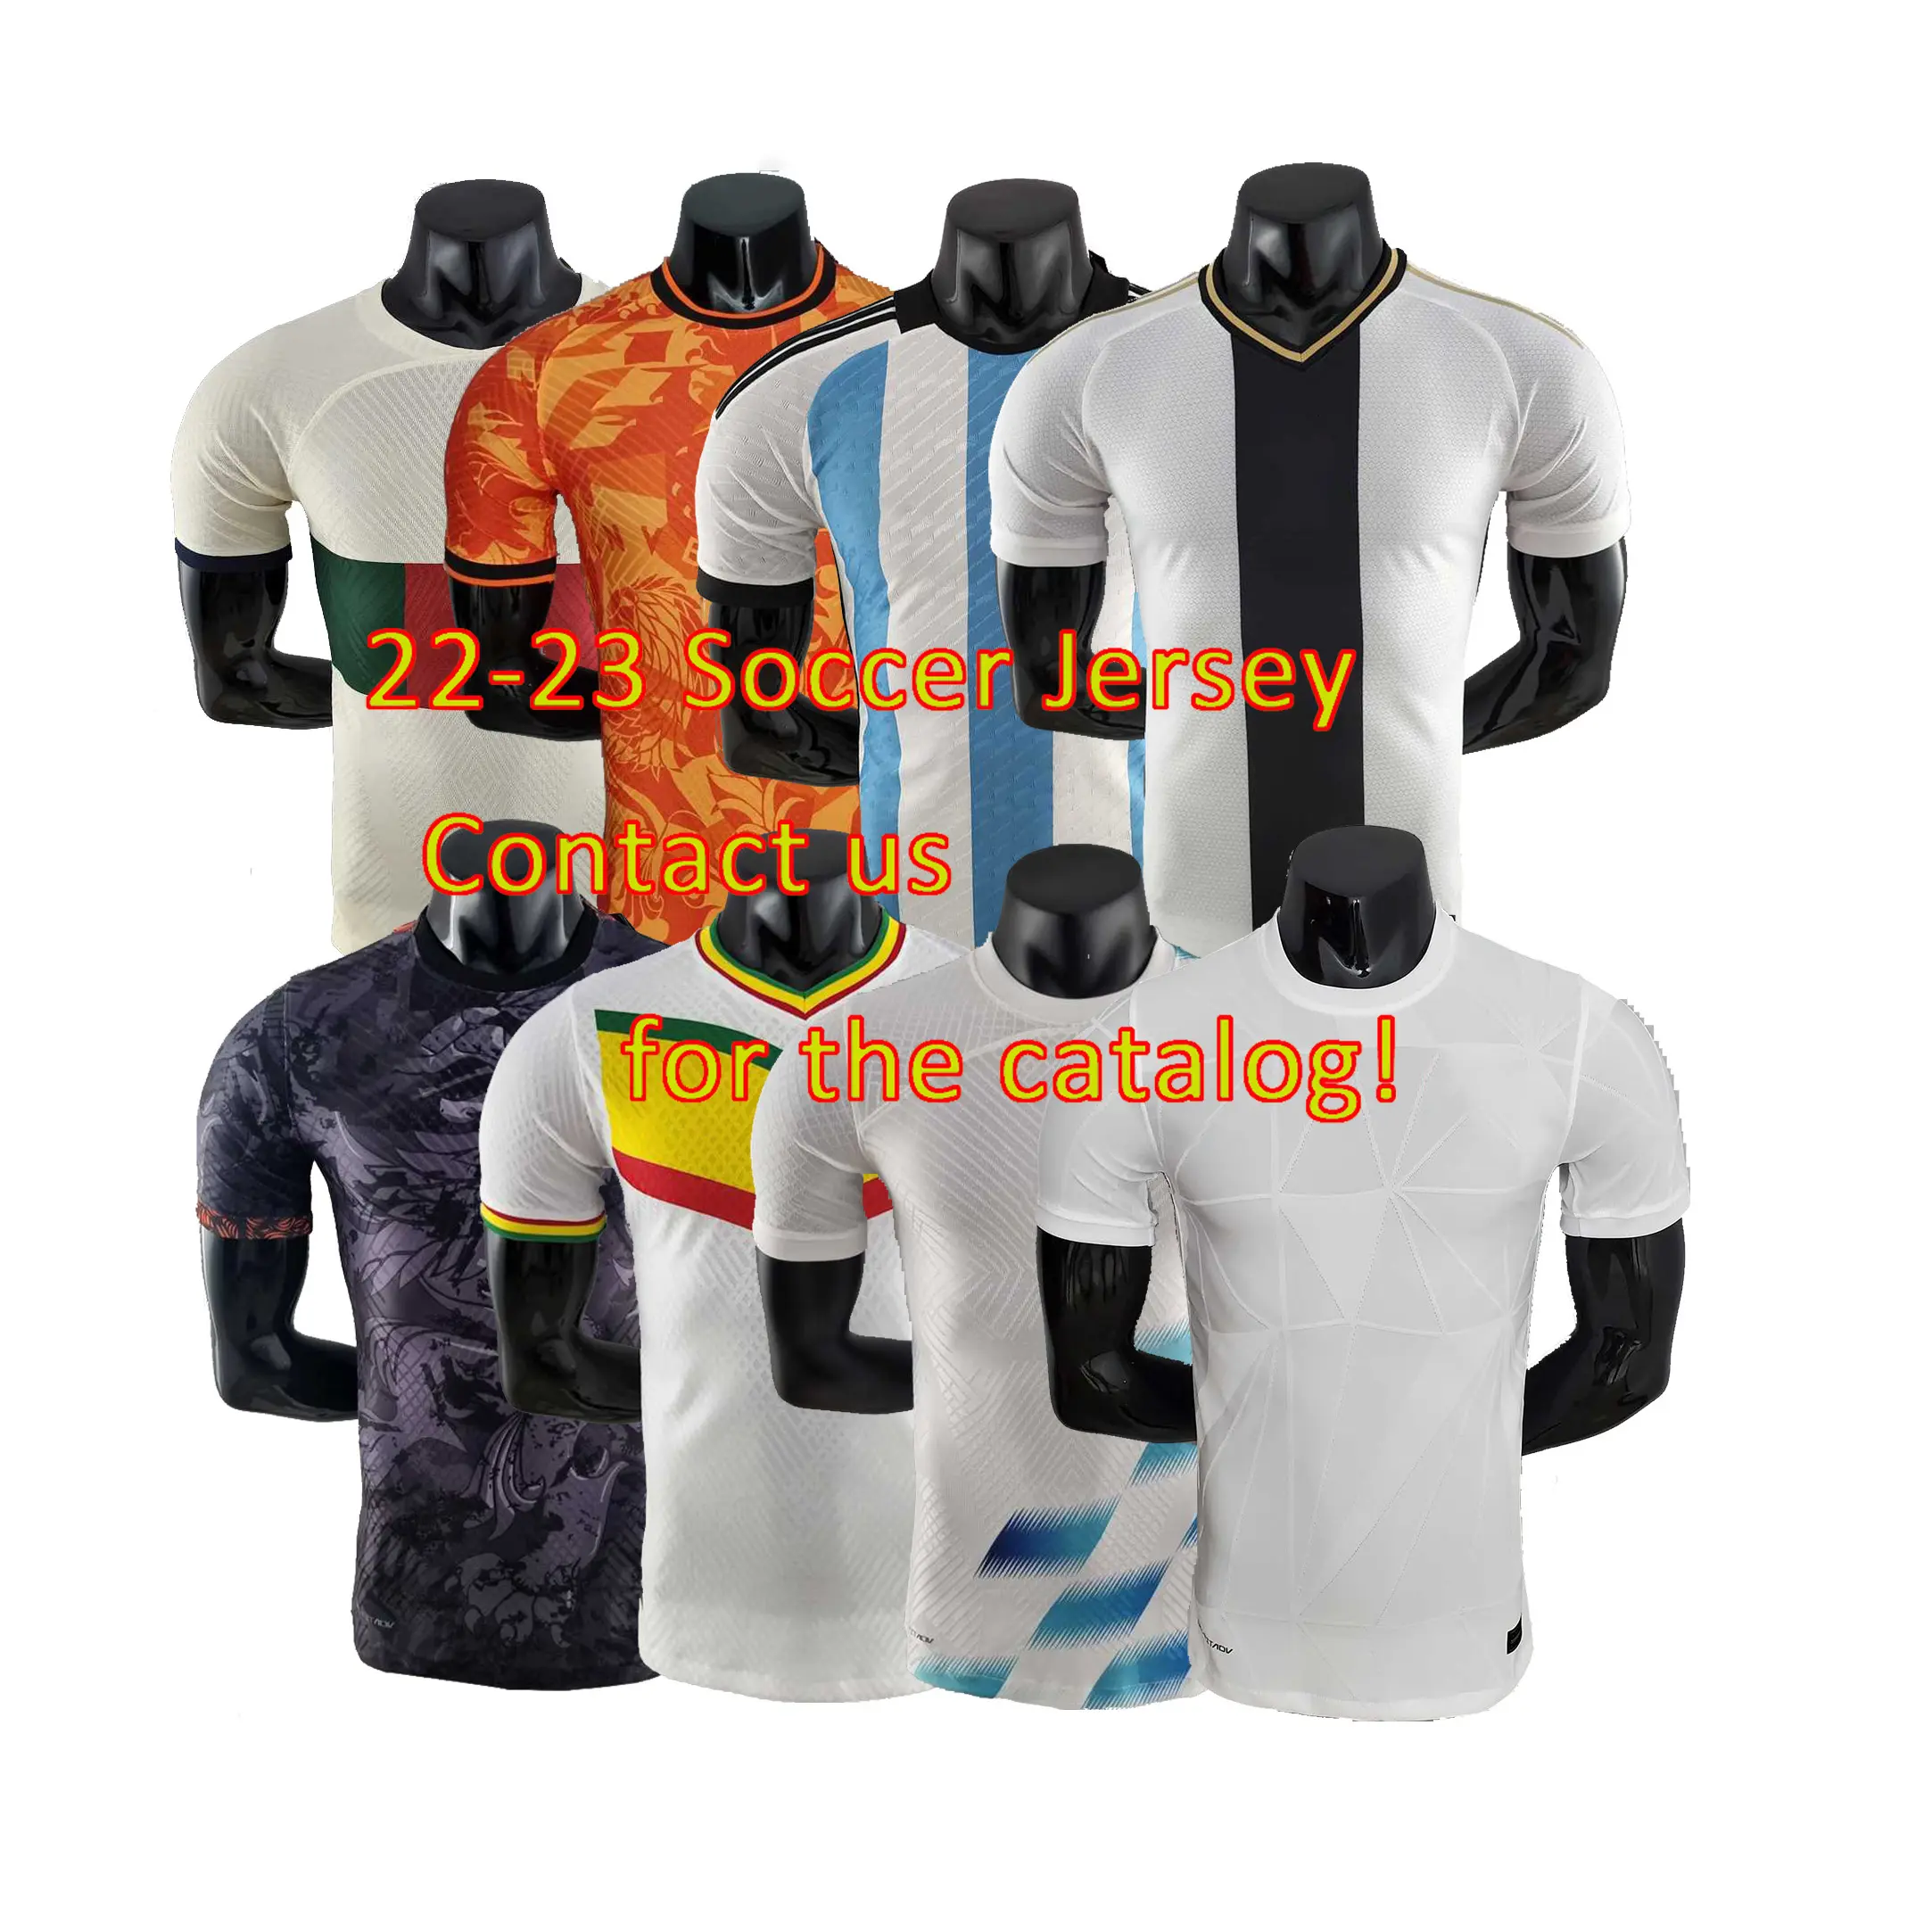 Camiseta de fútbol personalizada para niños, Jersey de fútbol de Tailandia, venta al por mayor, 22-23